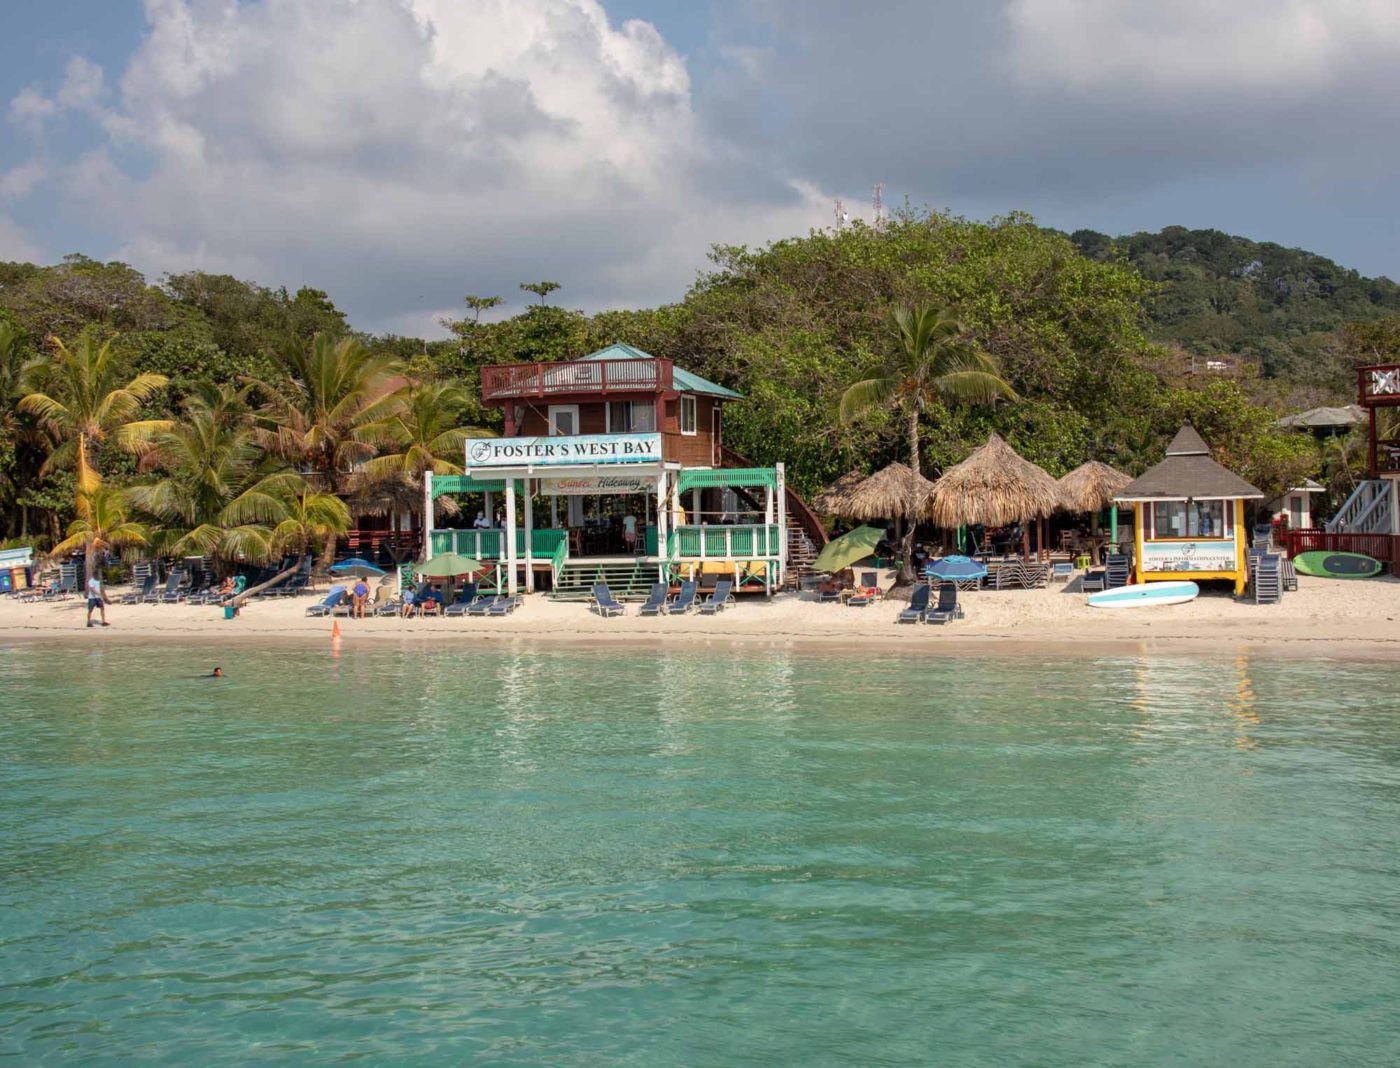 Caribbean Roatan Island Beaches & Jungles: A Honduras Paradise